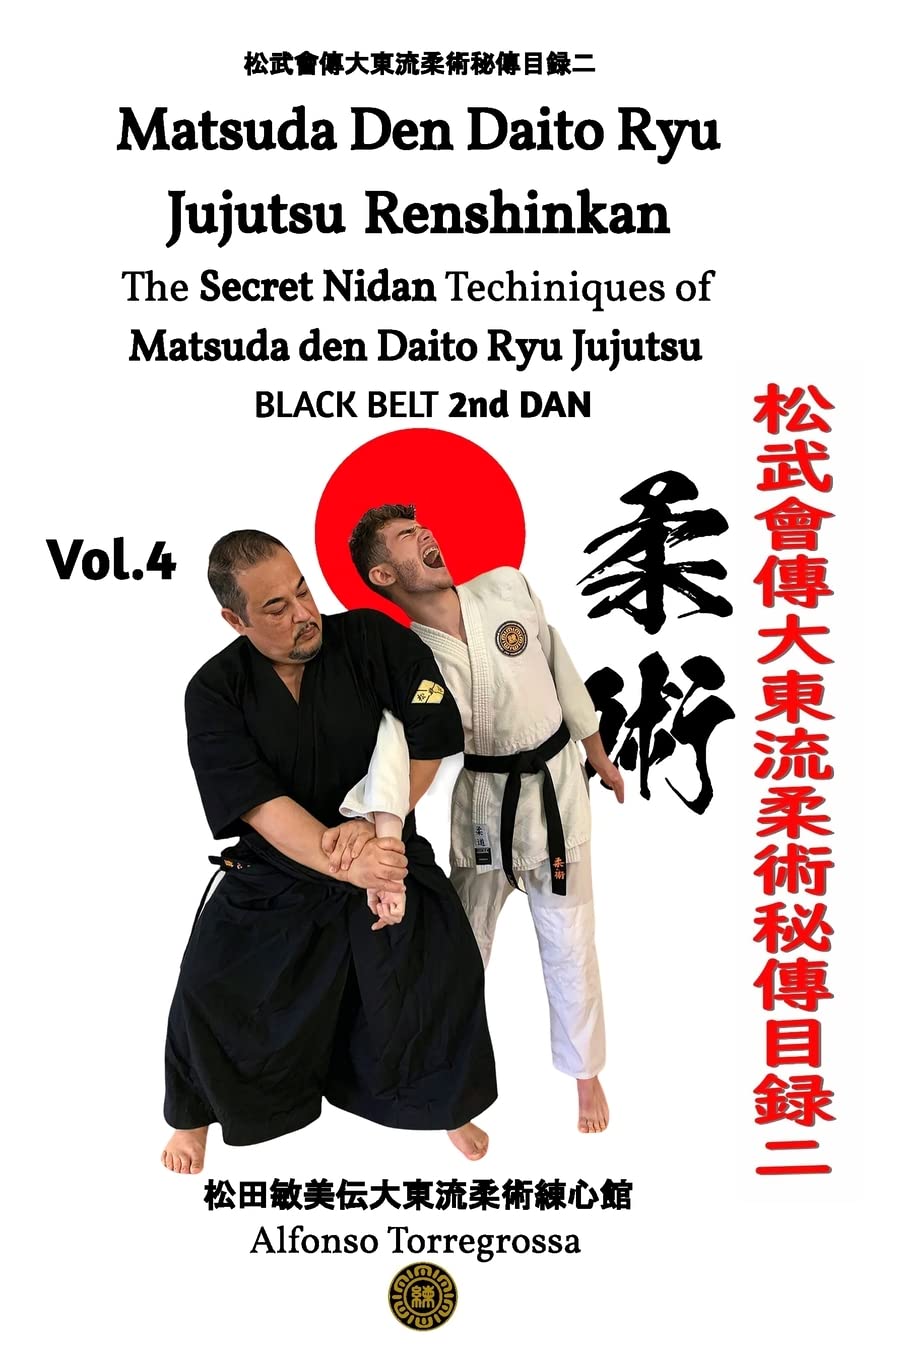 Daito Ryu Aikijujutsu Renshinkan Book 4 by Alfonso Torregrossa